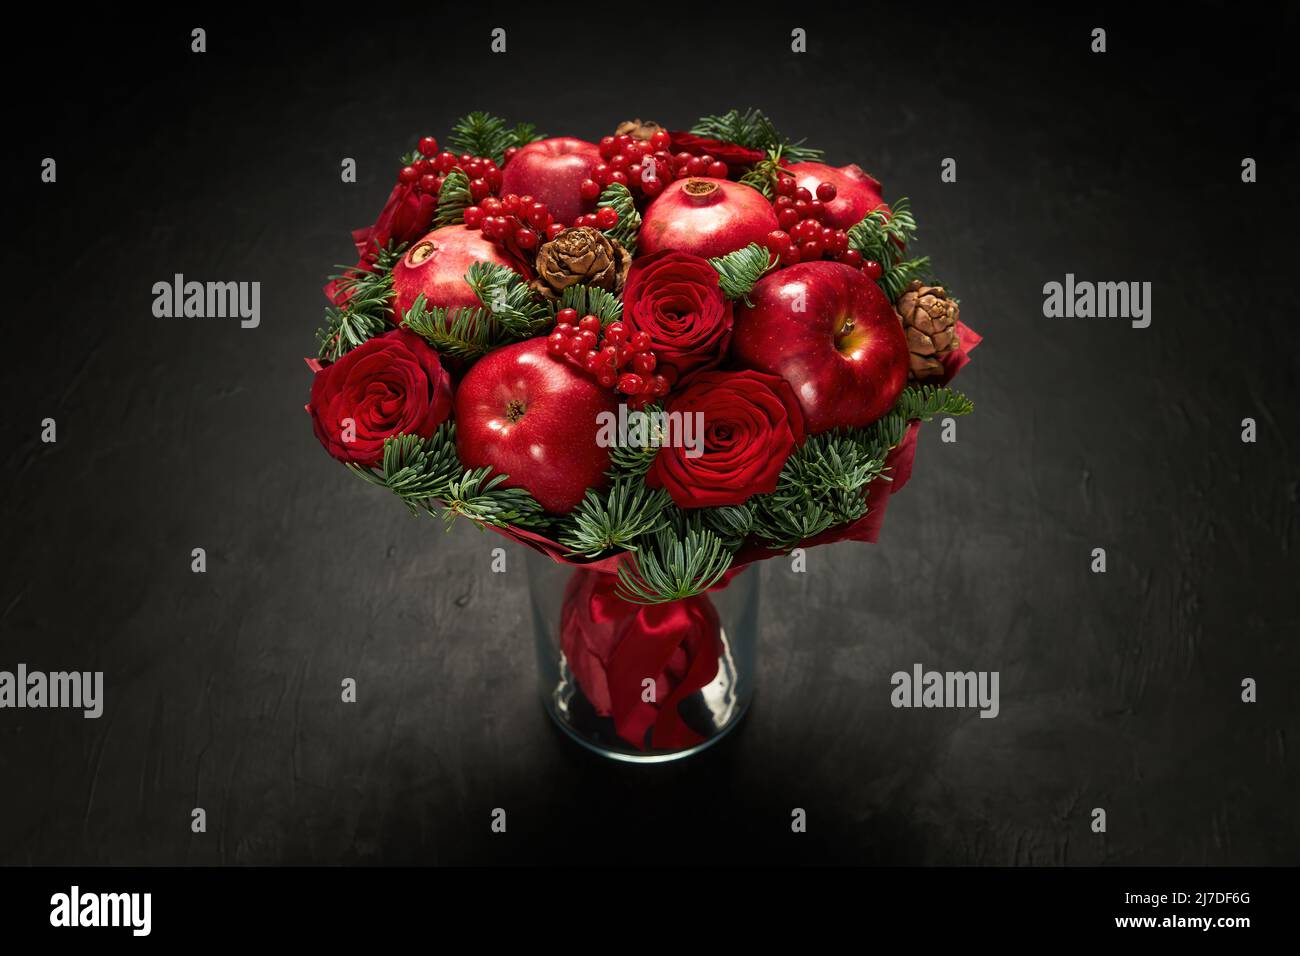 Hermoso bouquet de manzanas rojas, granadas y rosas rojas, decorado con ramitas de viburnum y abeto Foto de stock